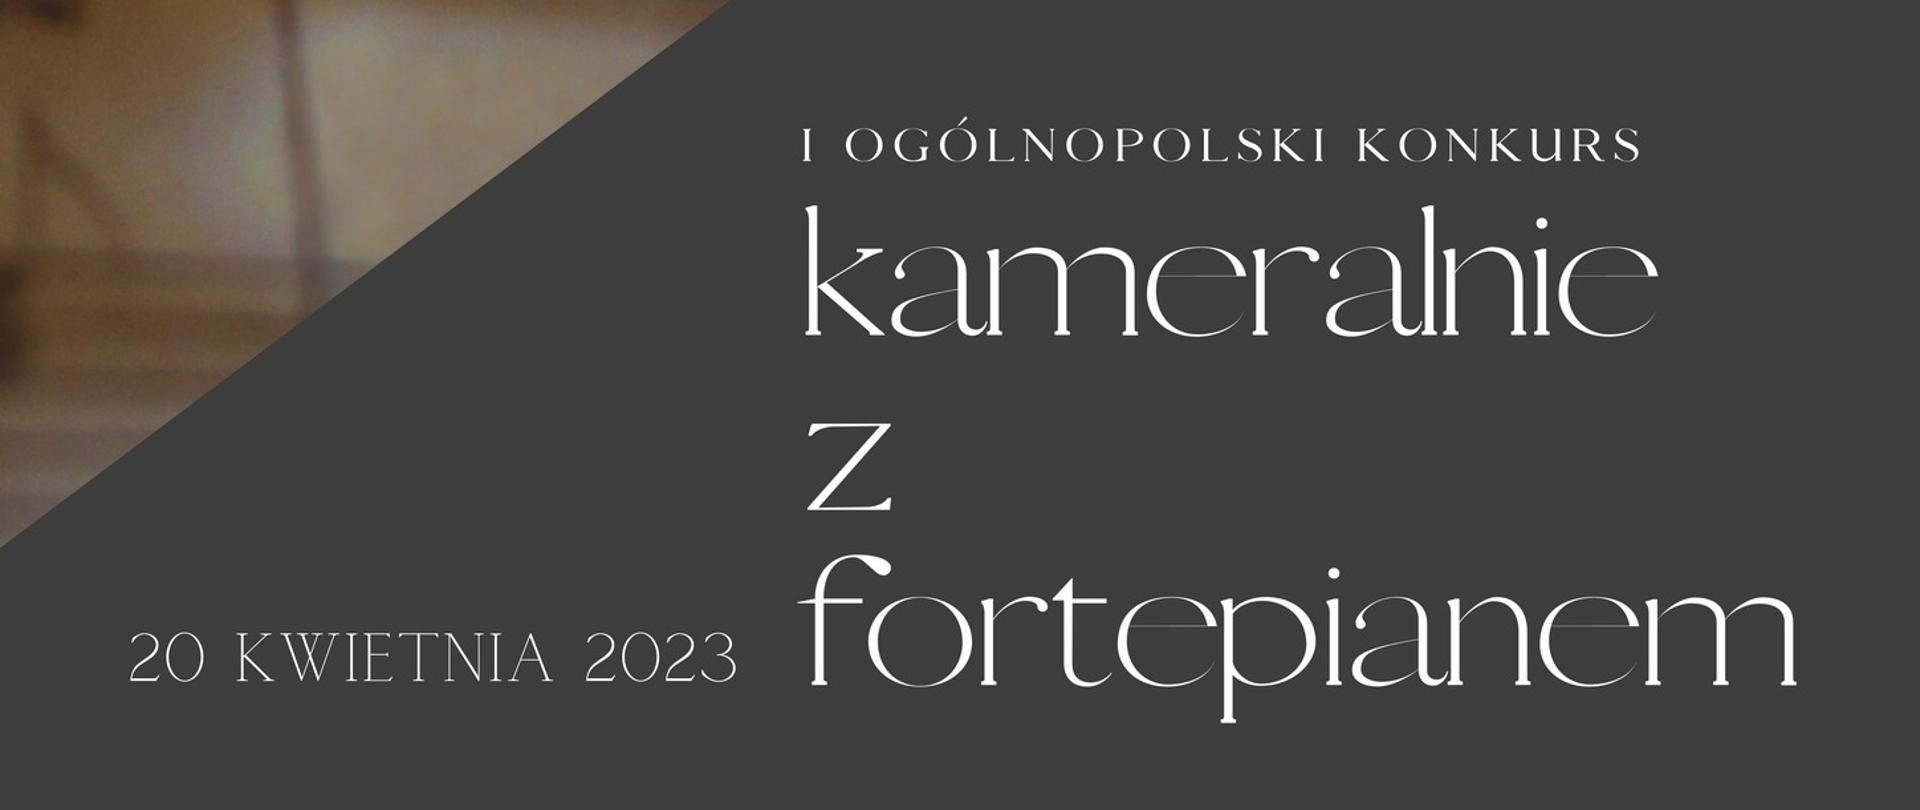 Na czarnym tle napis I Ogólnopolski Konkurs Kameralnie z Fortepianem, Zespół Szkół Muzycznych Gdańsk-Wrzeszcz, 20 kwietnia 2023